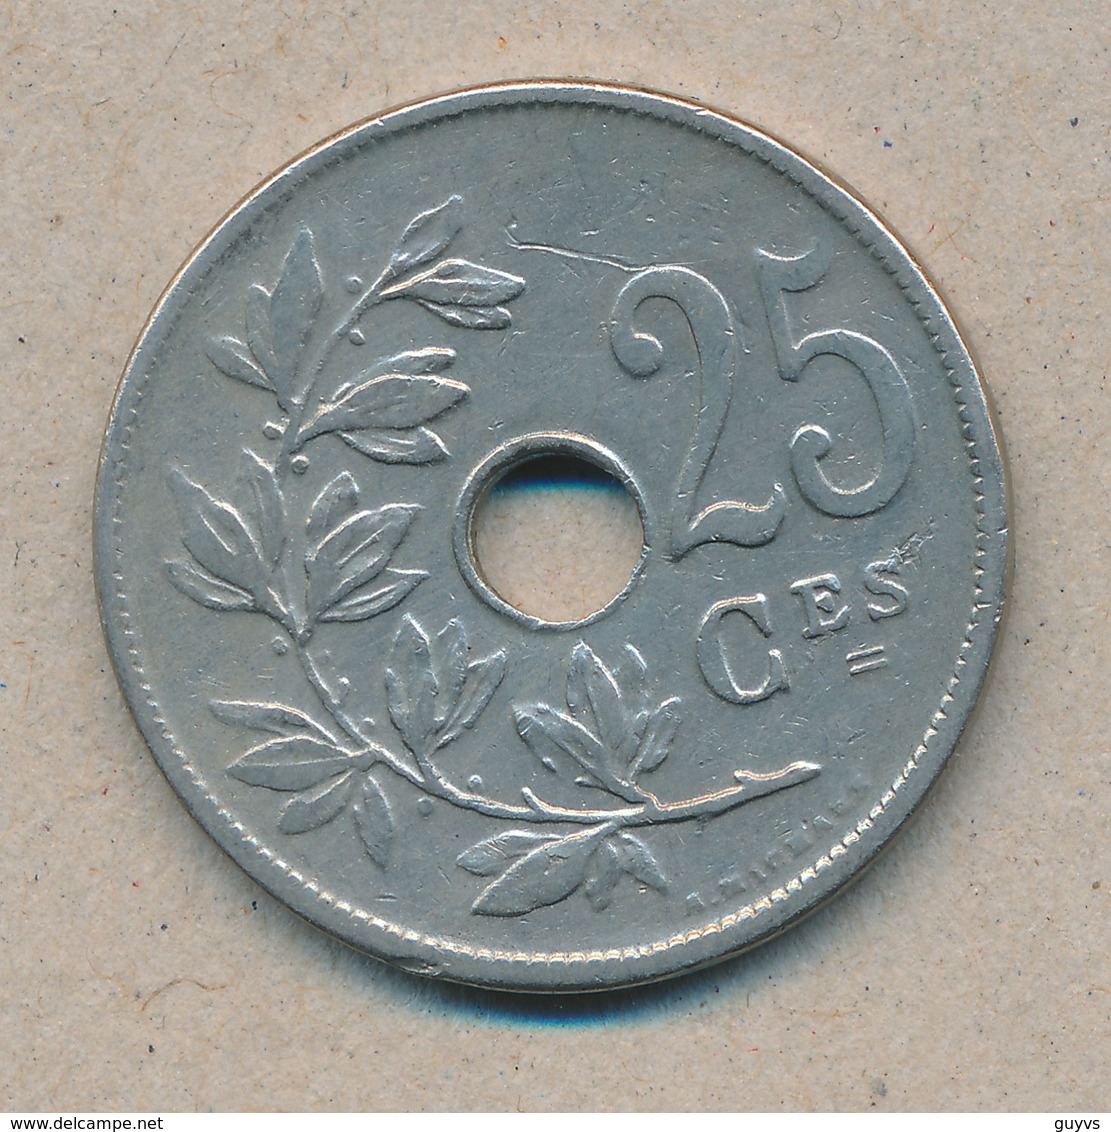 België/Belgique 25 Ct Leopold II 1909 Fr Morin 256 (703130) - 25 Cents